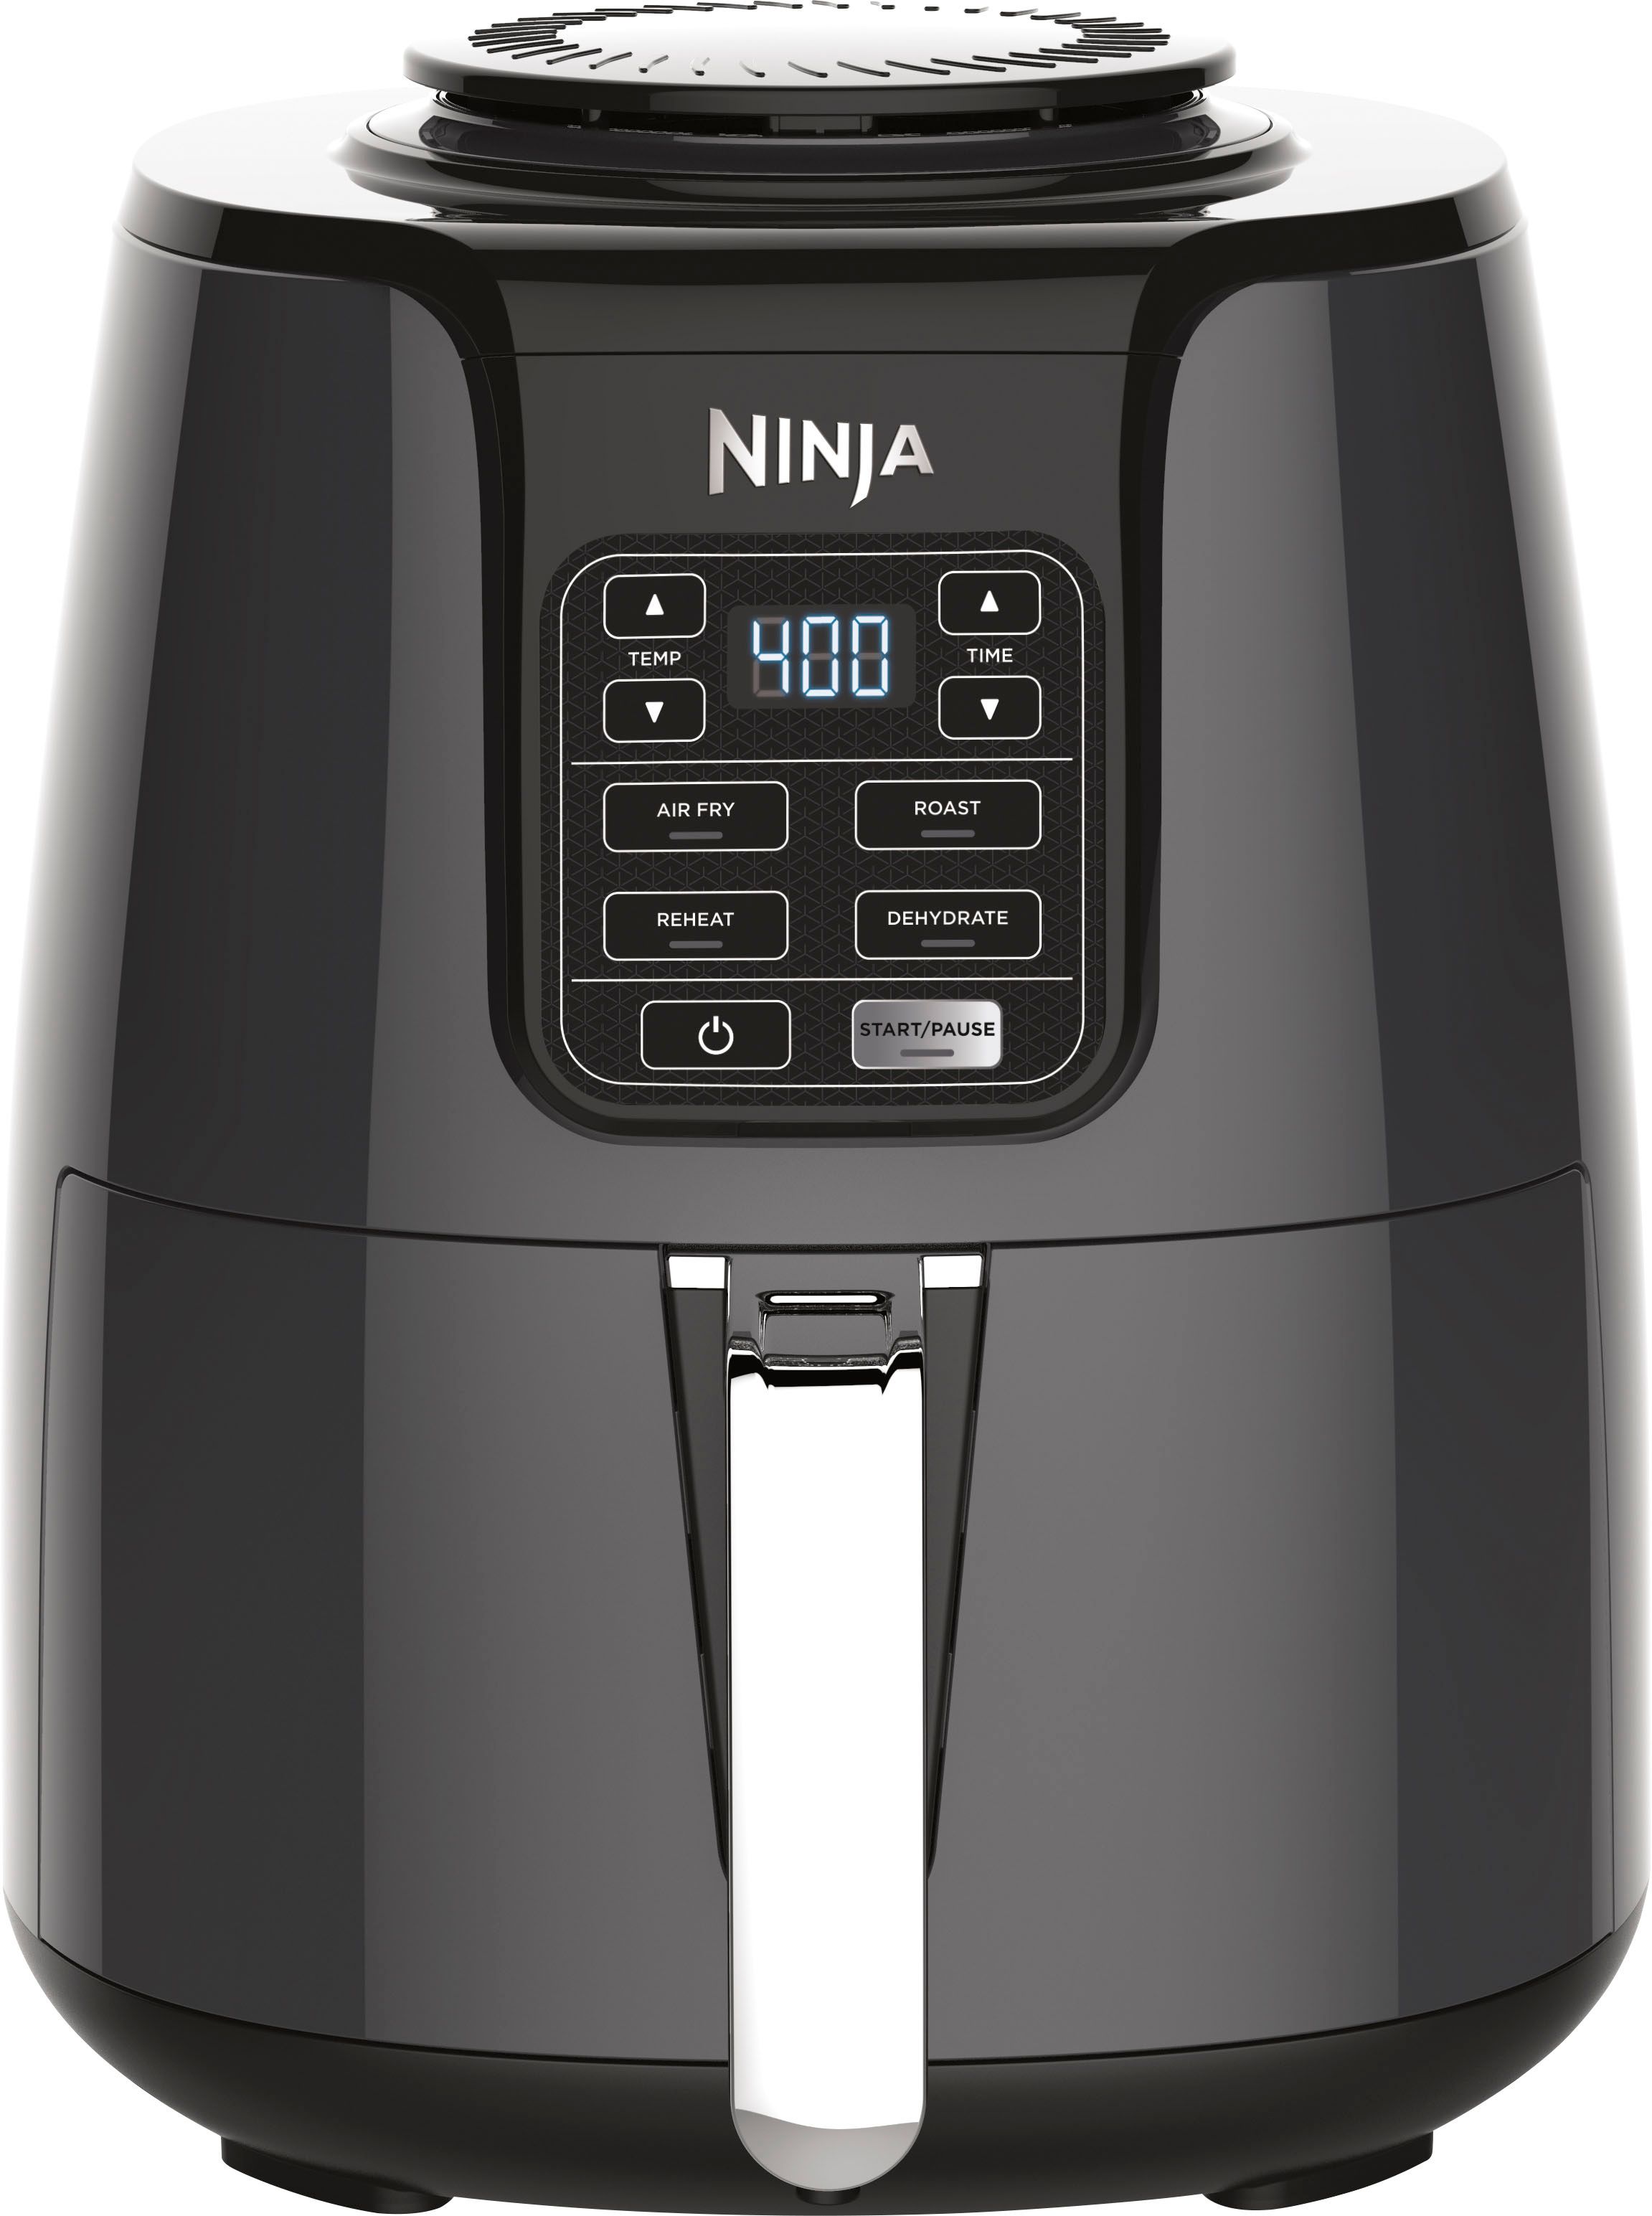 Ninja Air Fryer Black/Gray AF101 - Best Buy | Best Buy U.S.